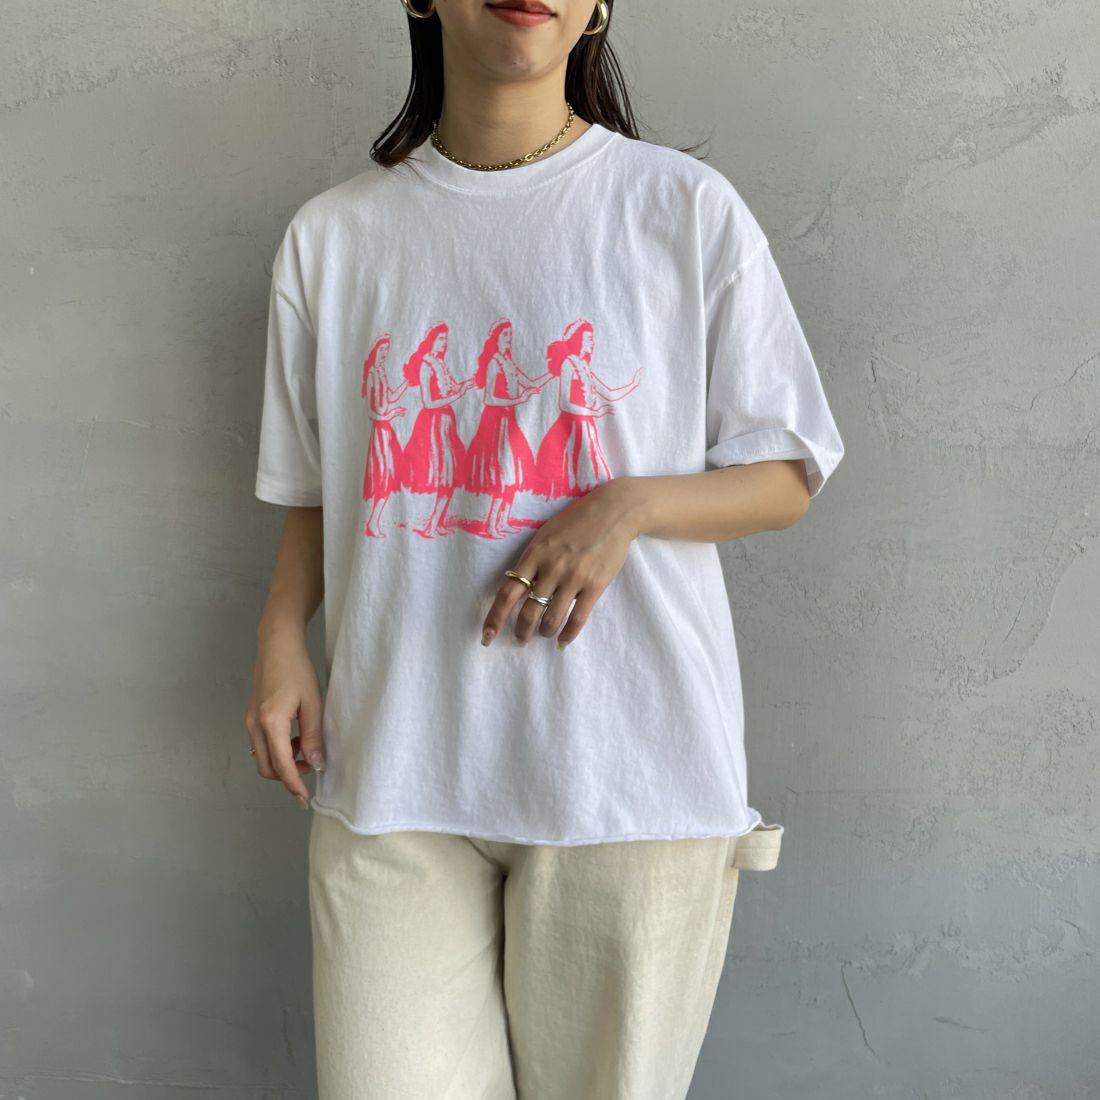 FUNG [ファング] HULA GIRLS カットオフプリントTシャツ [HULA-GIRLS] WHITE/PINK